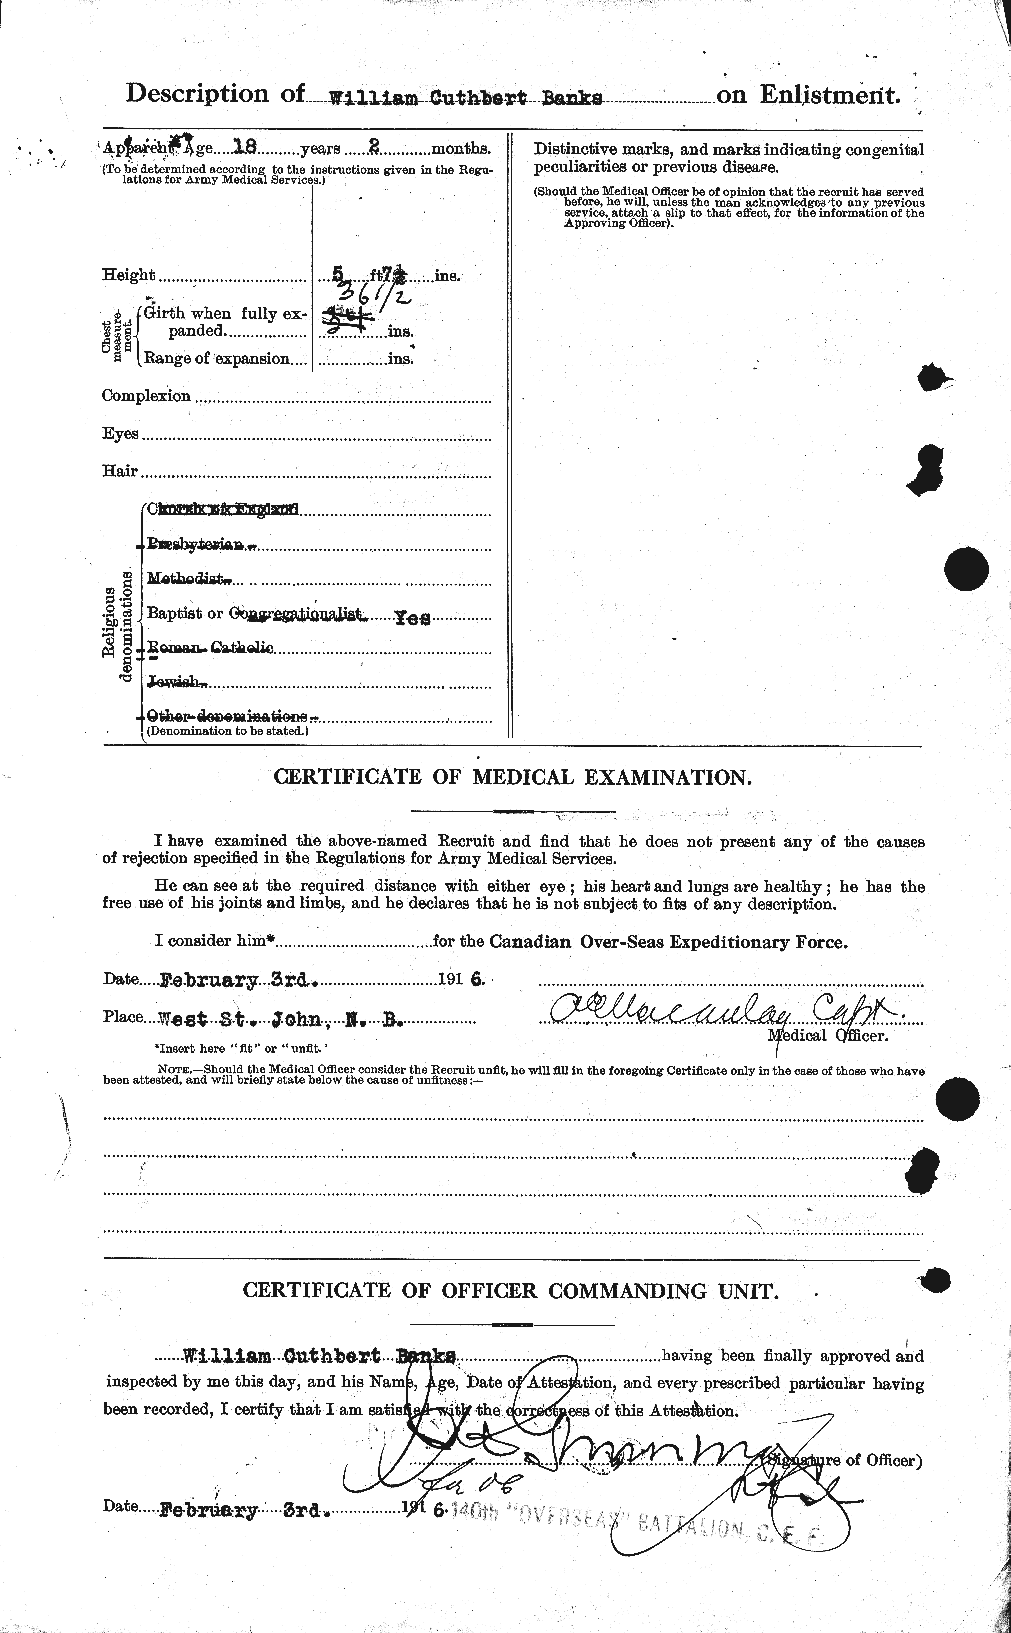 Dossiers du Personnel de la Première Guerre mondiale - CEC 224921b